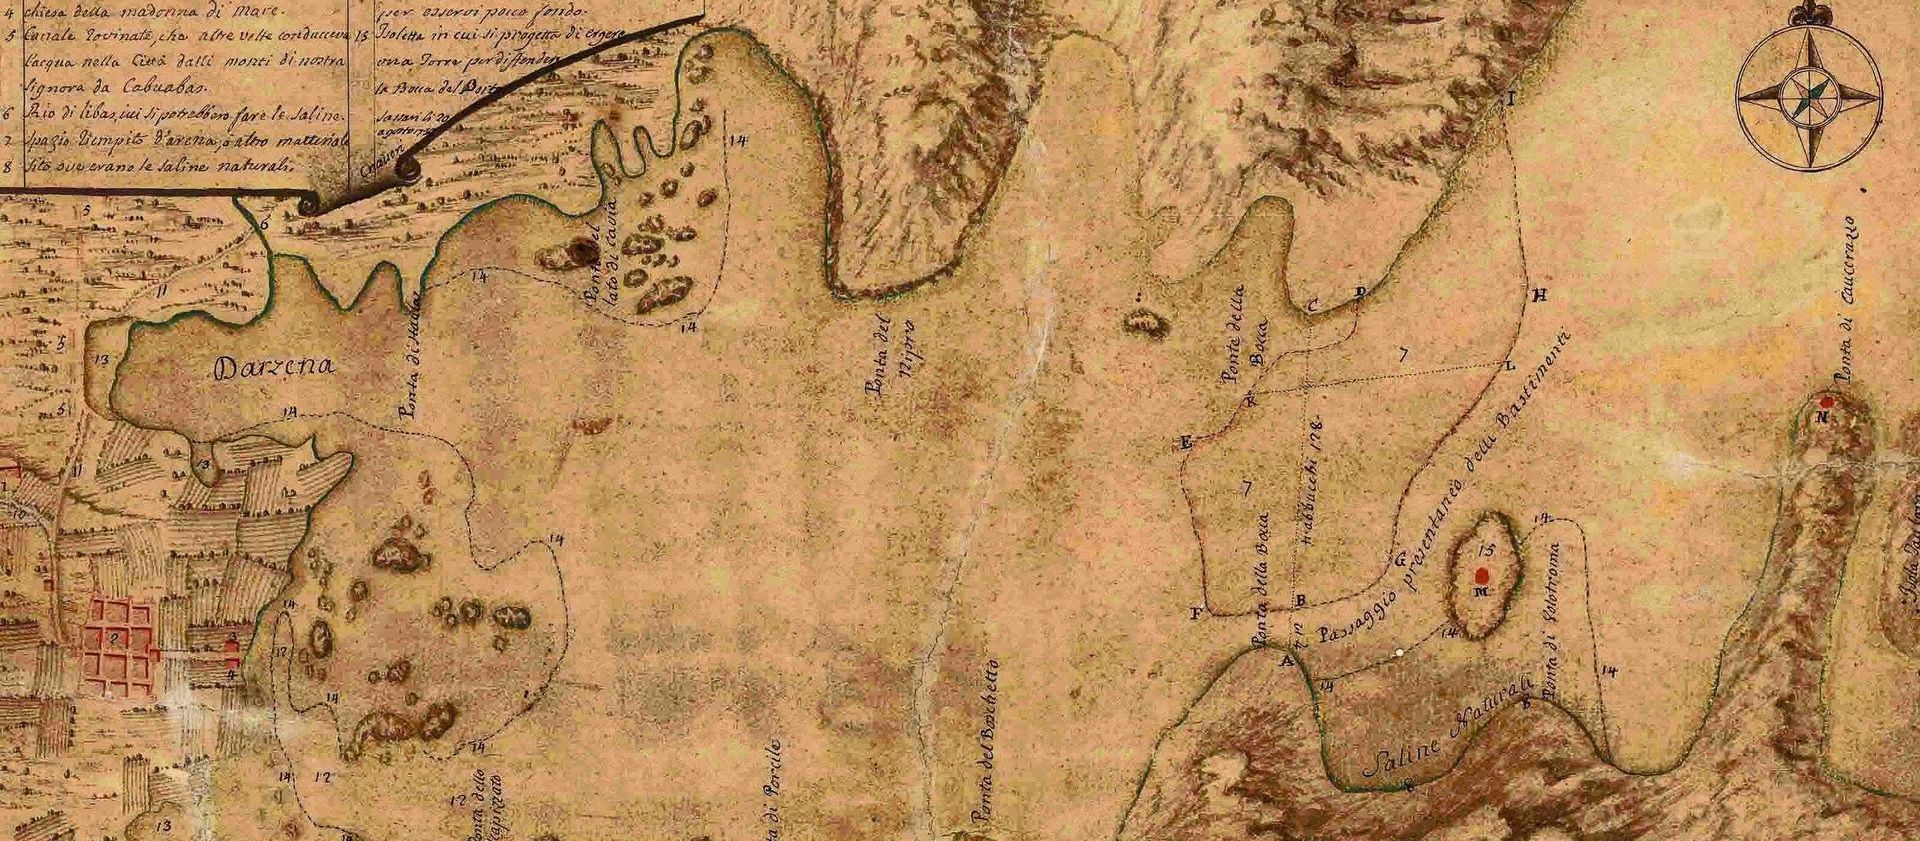 Craveri, golfo di Terranova, 1739